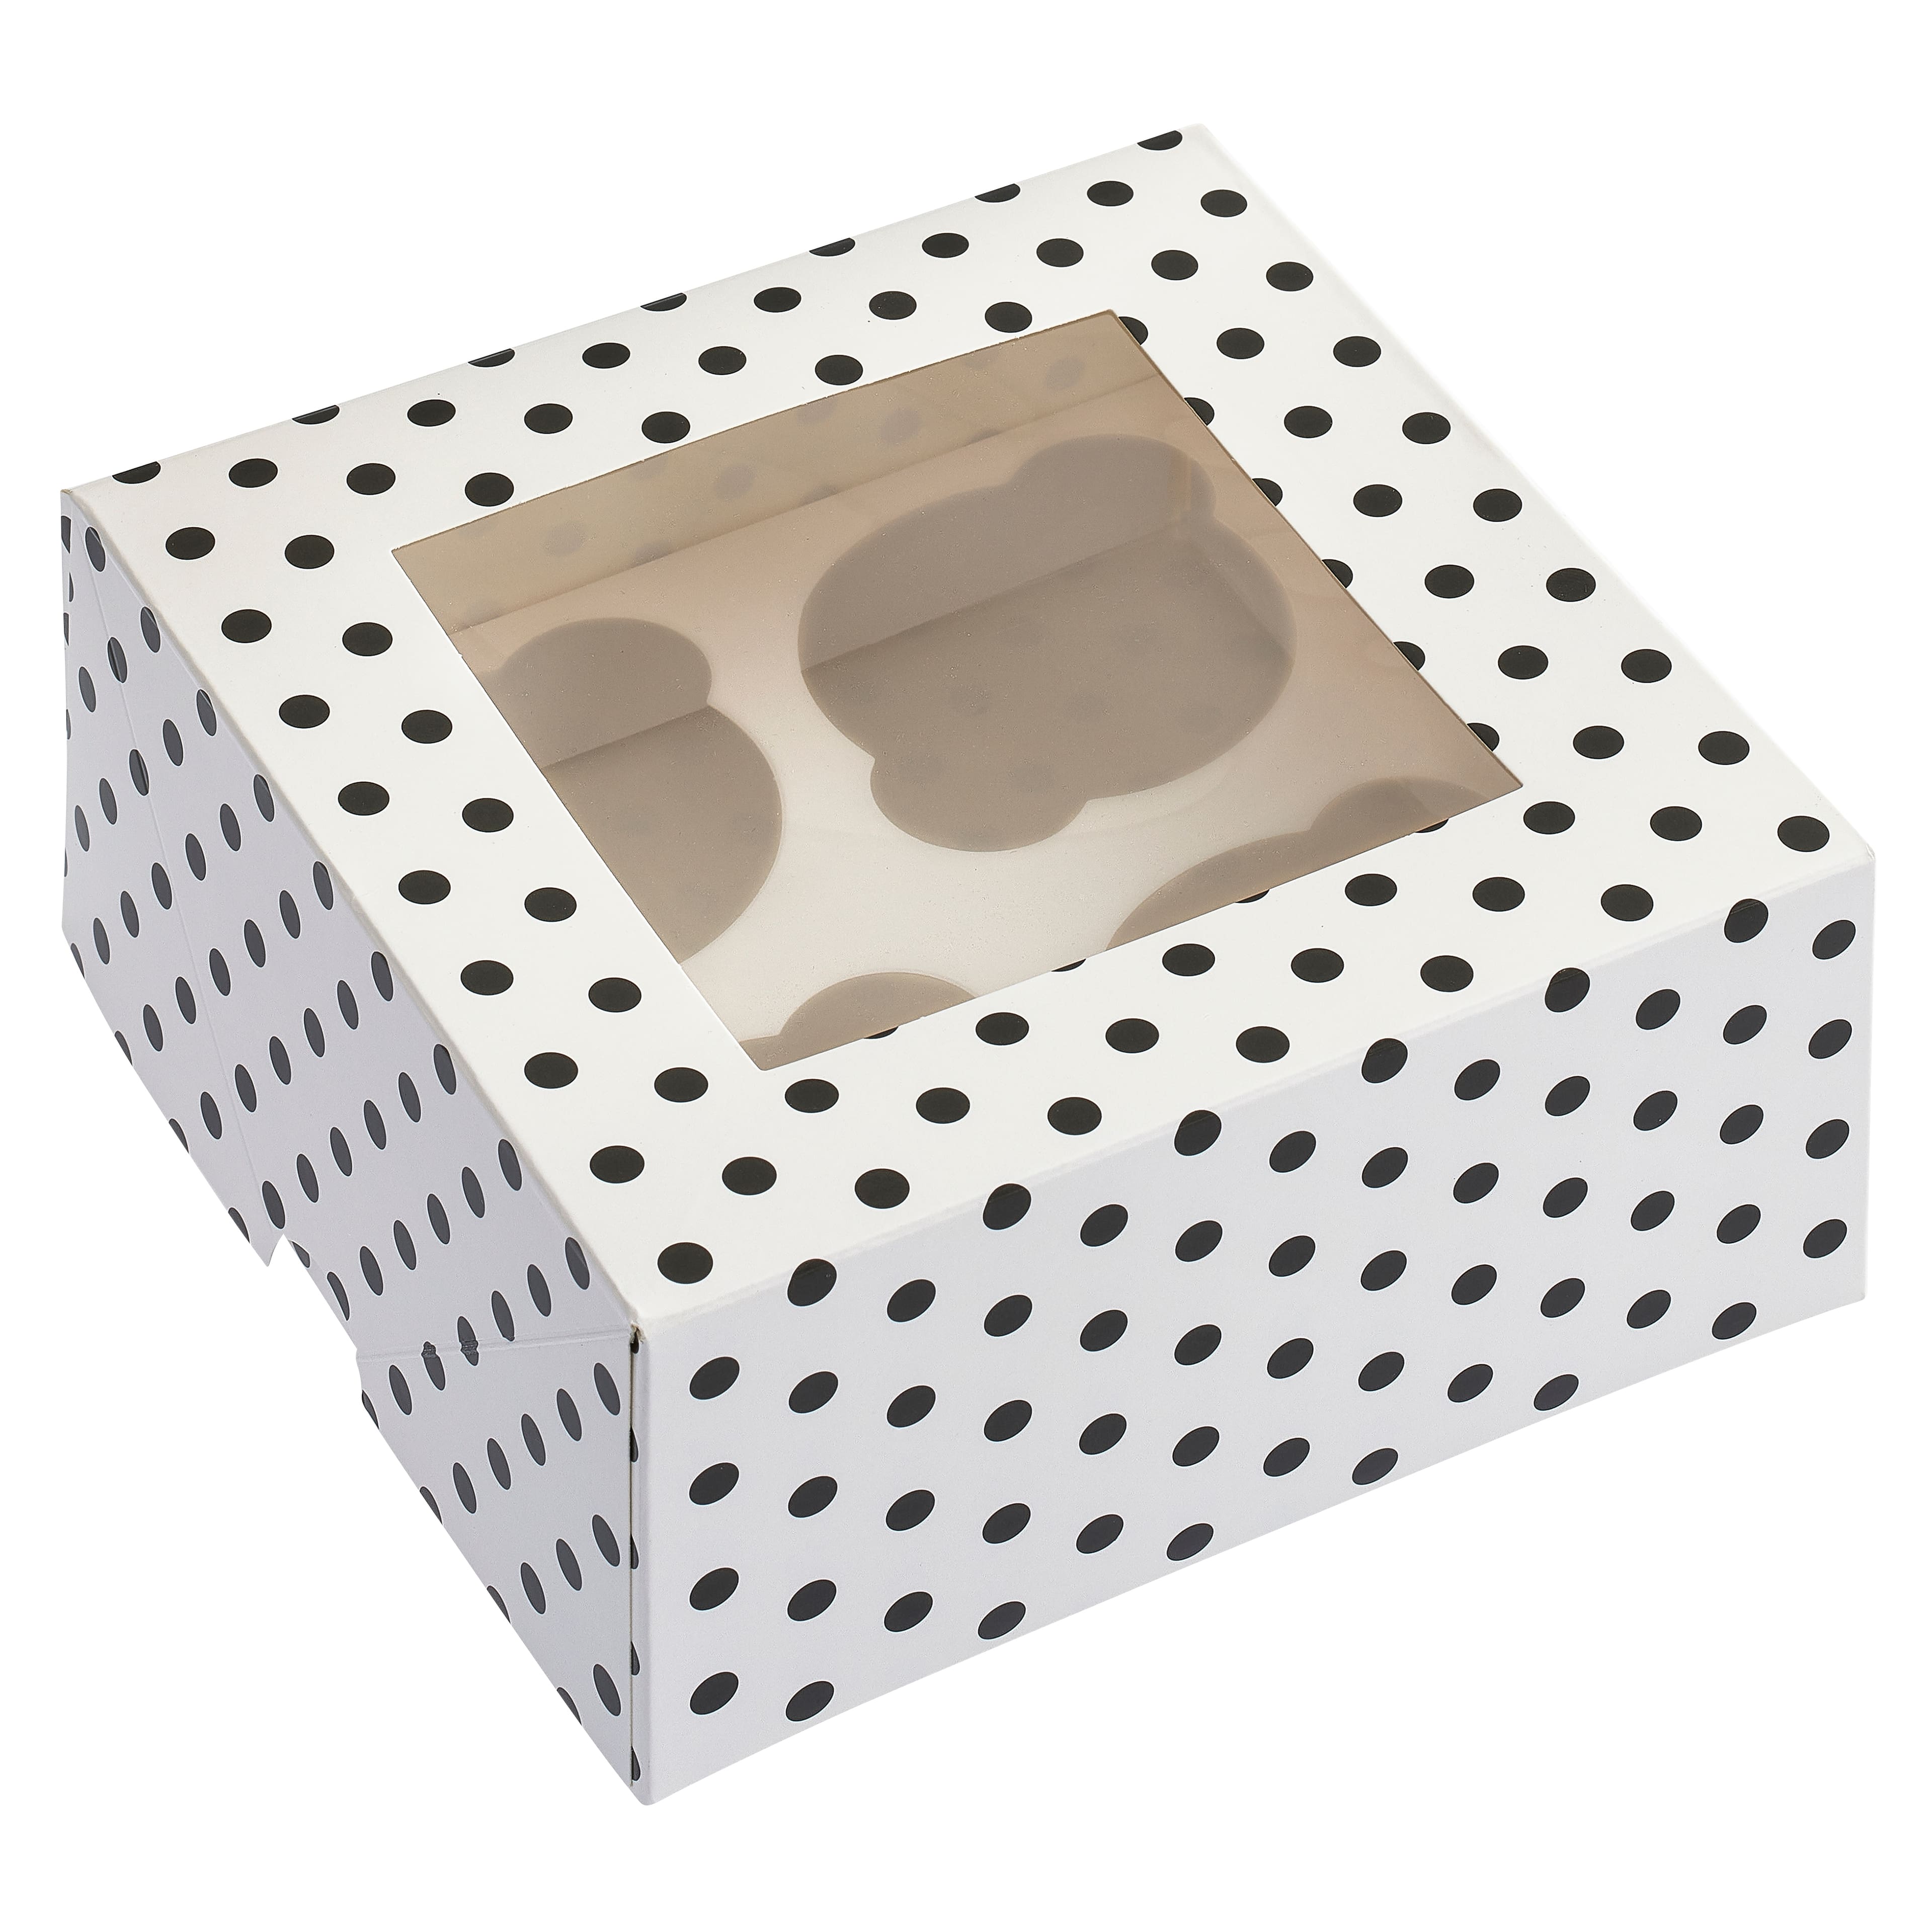 6 Packs 3 ct. (18 total) Black &#x26; White Polka Dot Cupcake Boxes by Celebrate It&#xAE;